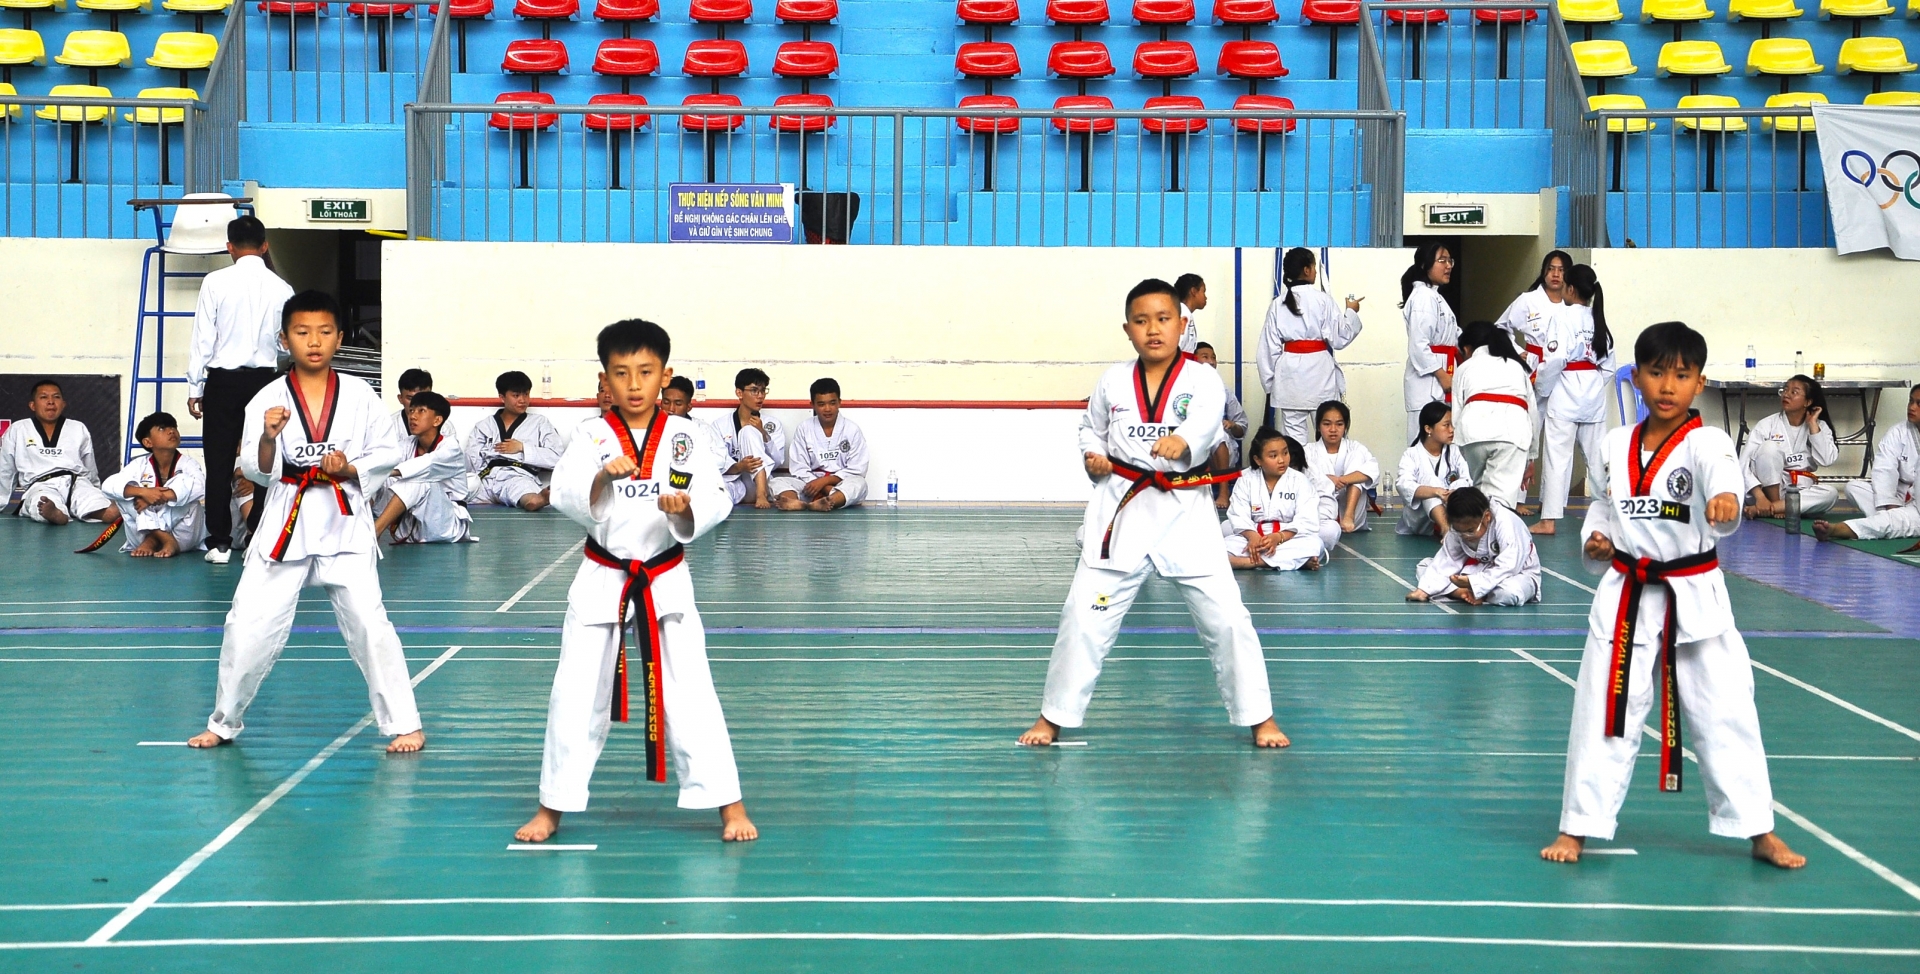 128 thí sinh Taekwondo Lâm Đồng tham dự kỳ thi nâng đai lần 2/2023 tại Đà Lạt